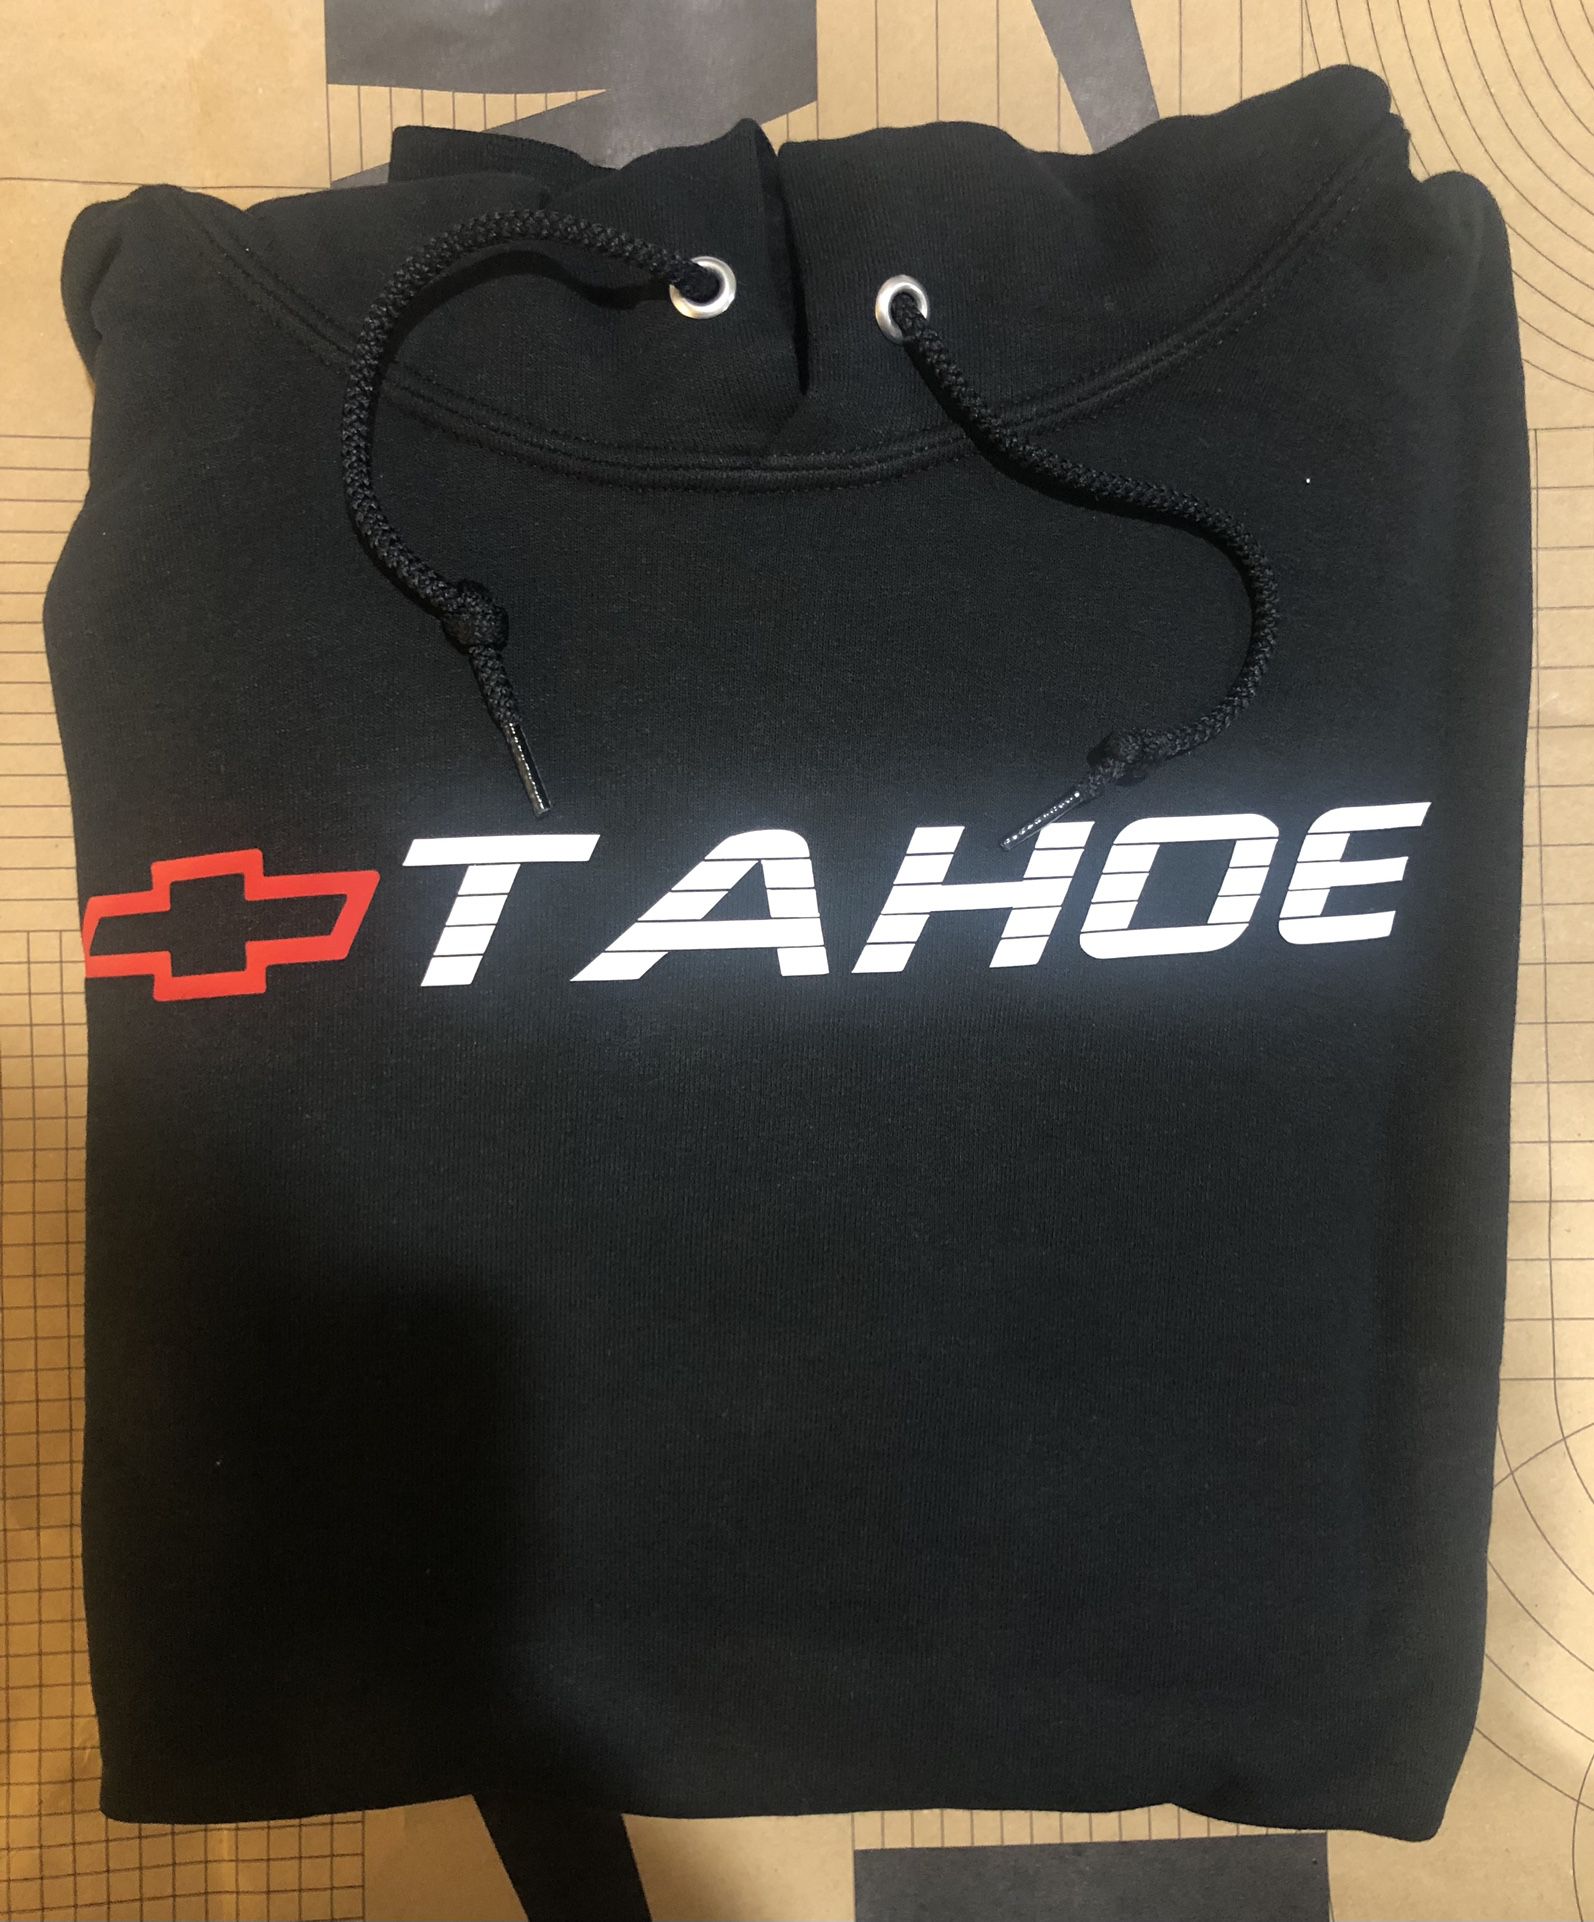 Chevy Tahoe Hoodie Sweater 